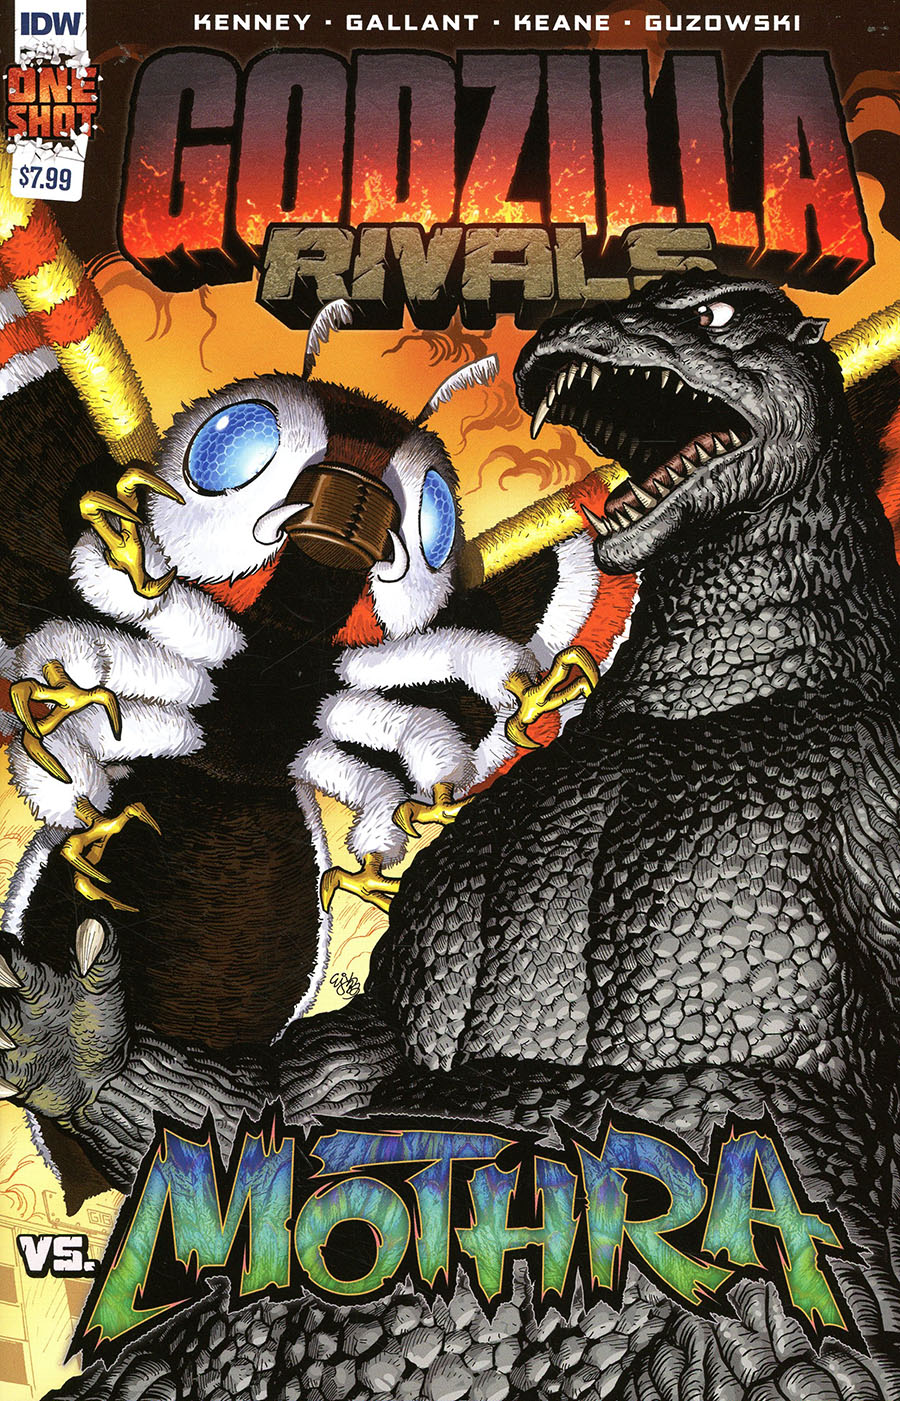 Godzilla Rivals vs Mothra #1 (One Shot) Cover A Regular EJ Su Cover